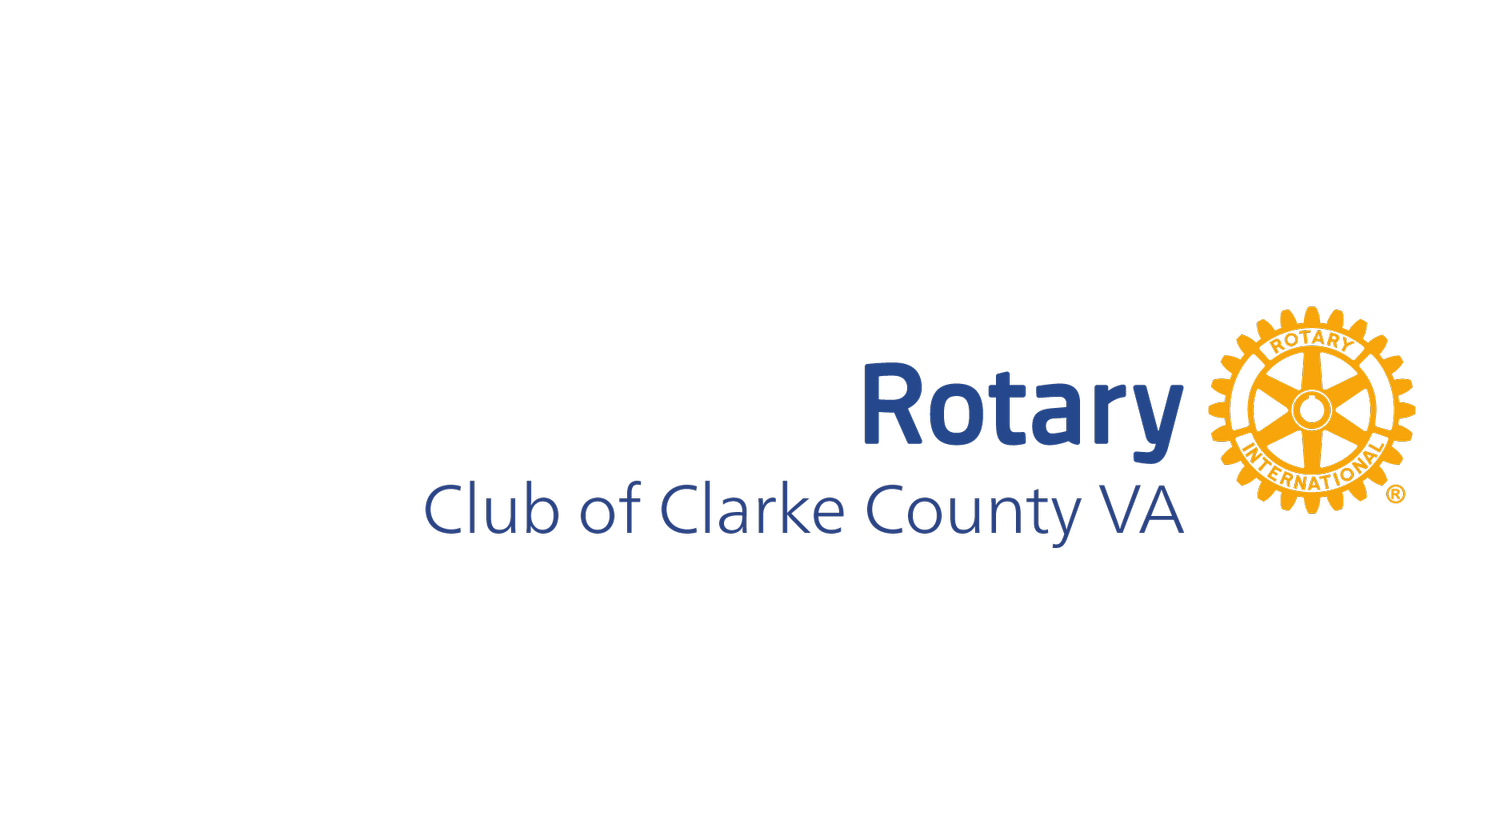 Rotary Club of Clarke County VA